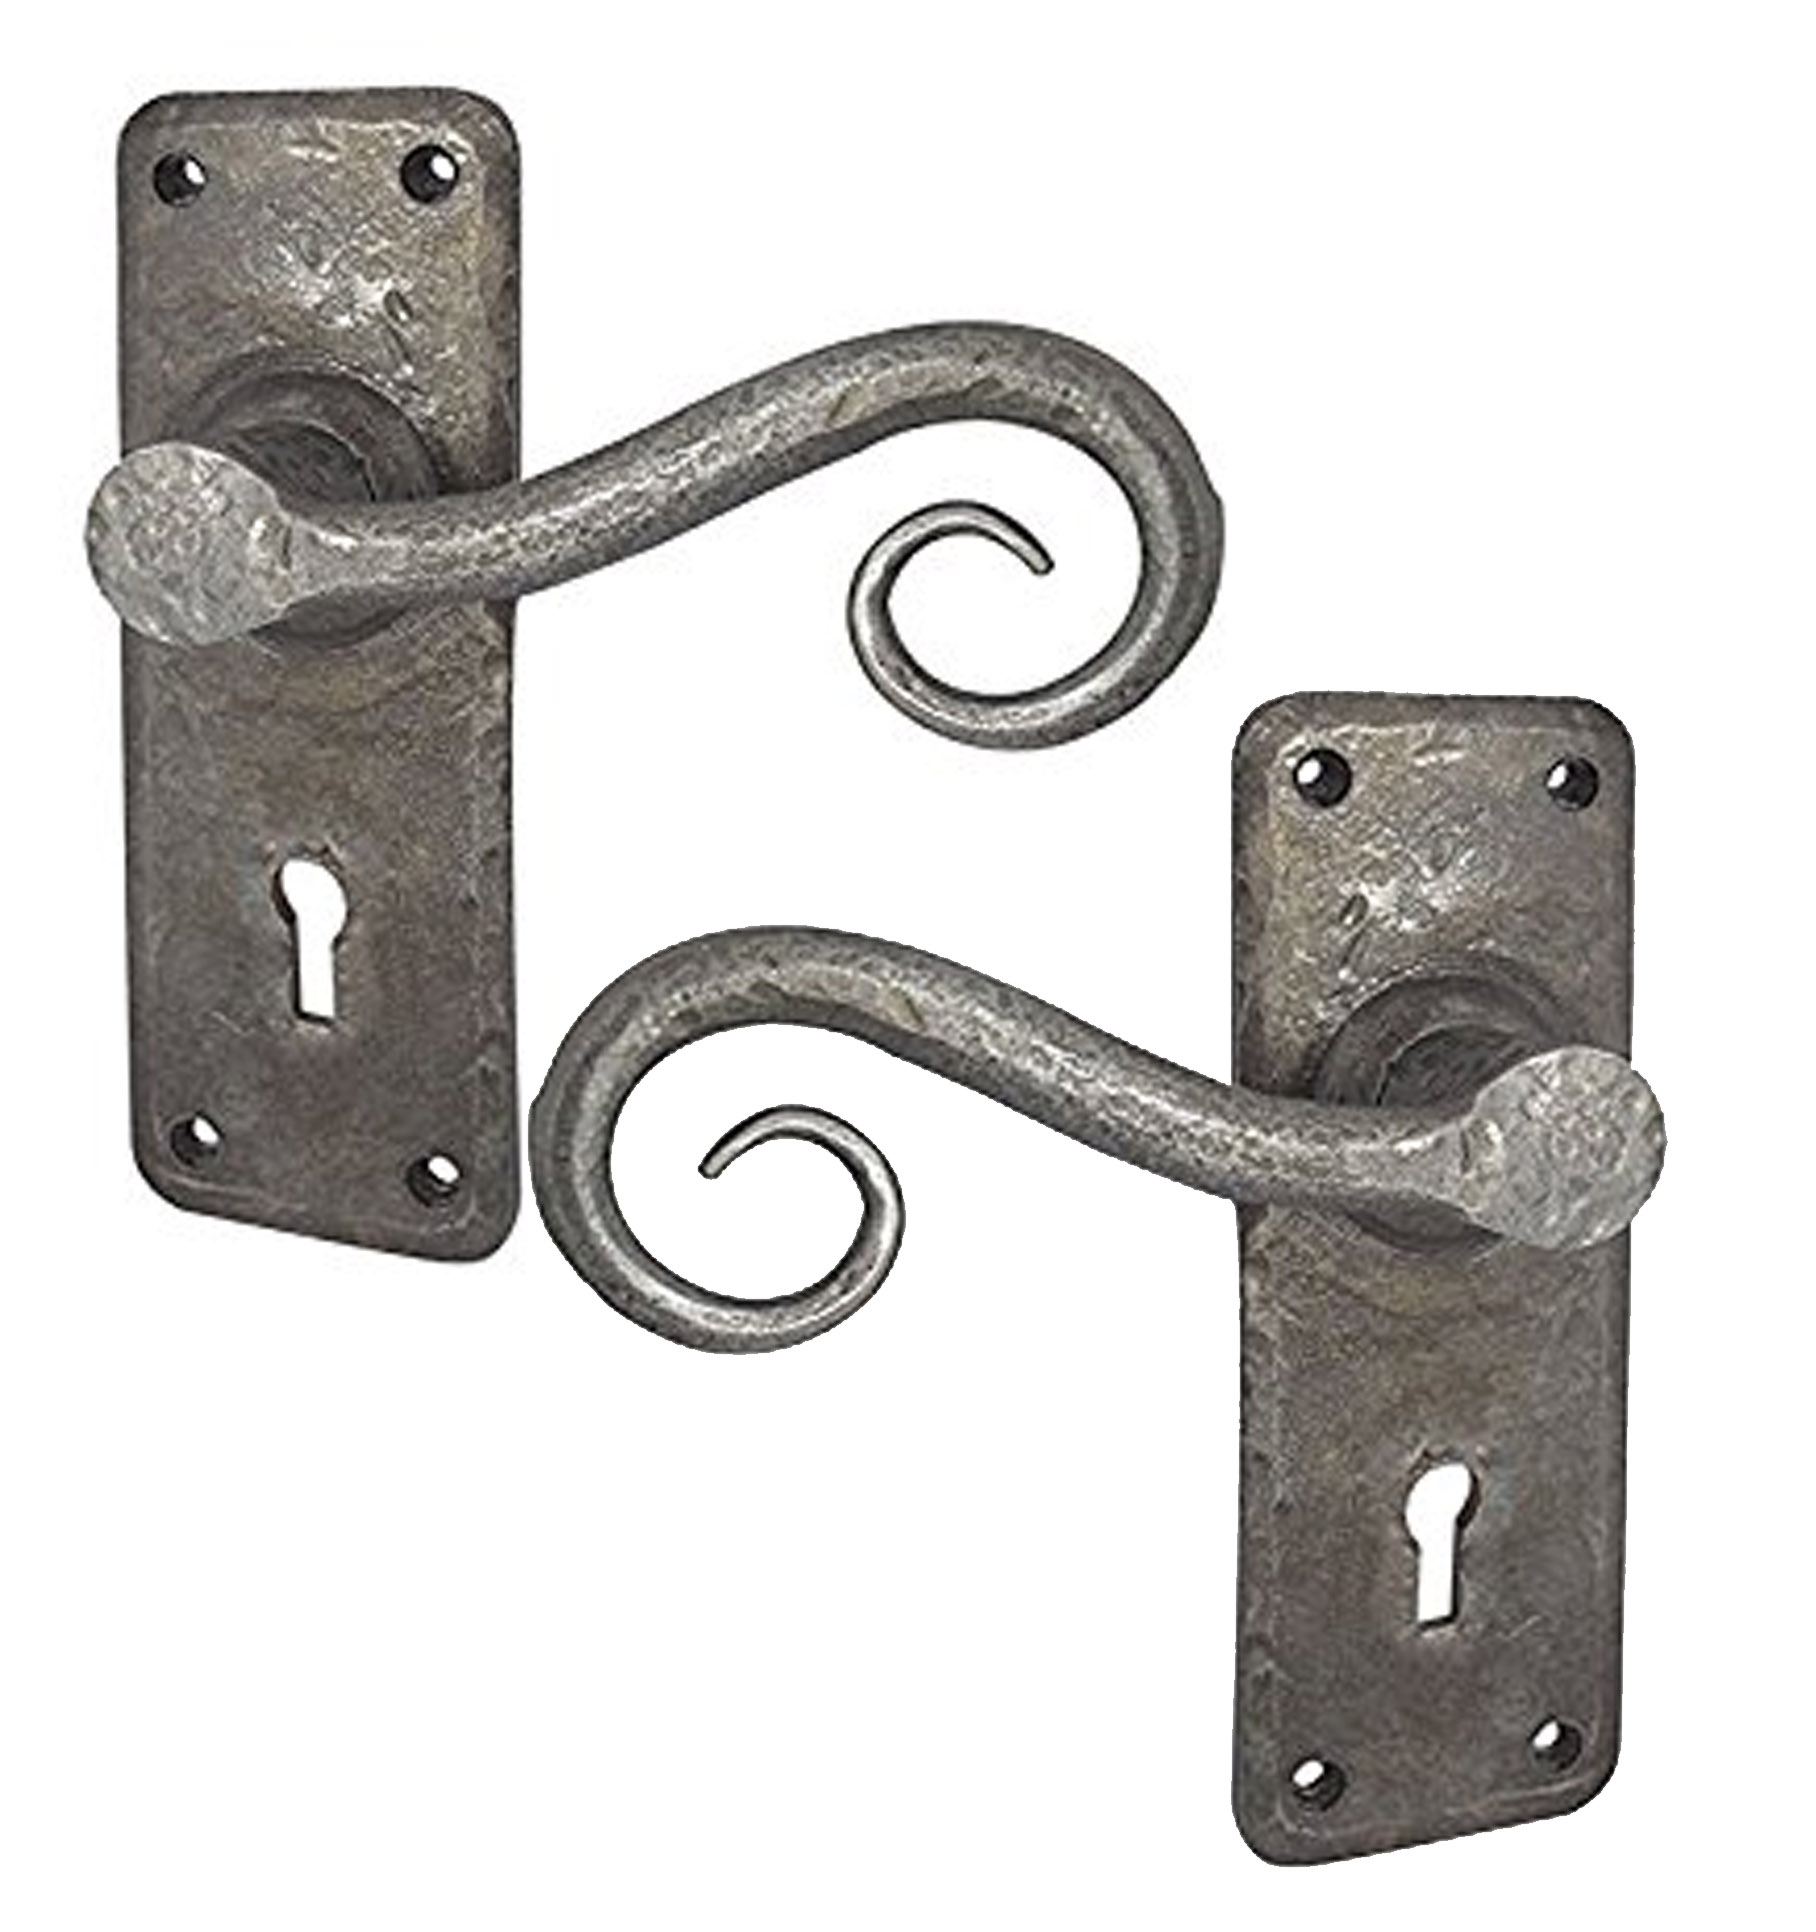 wrought iron door handles